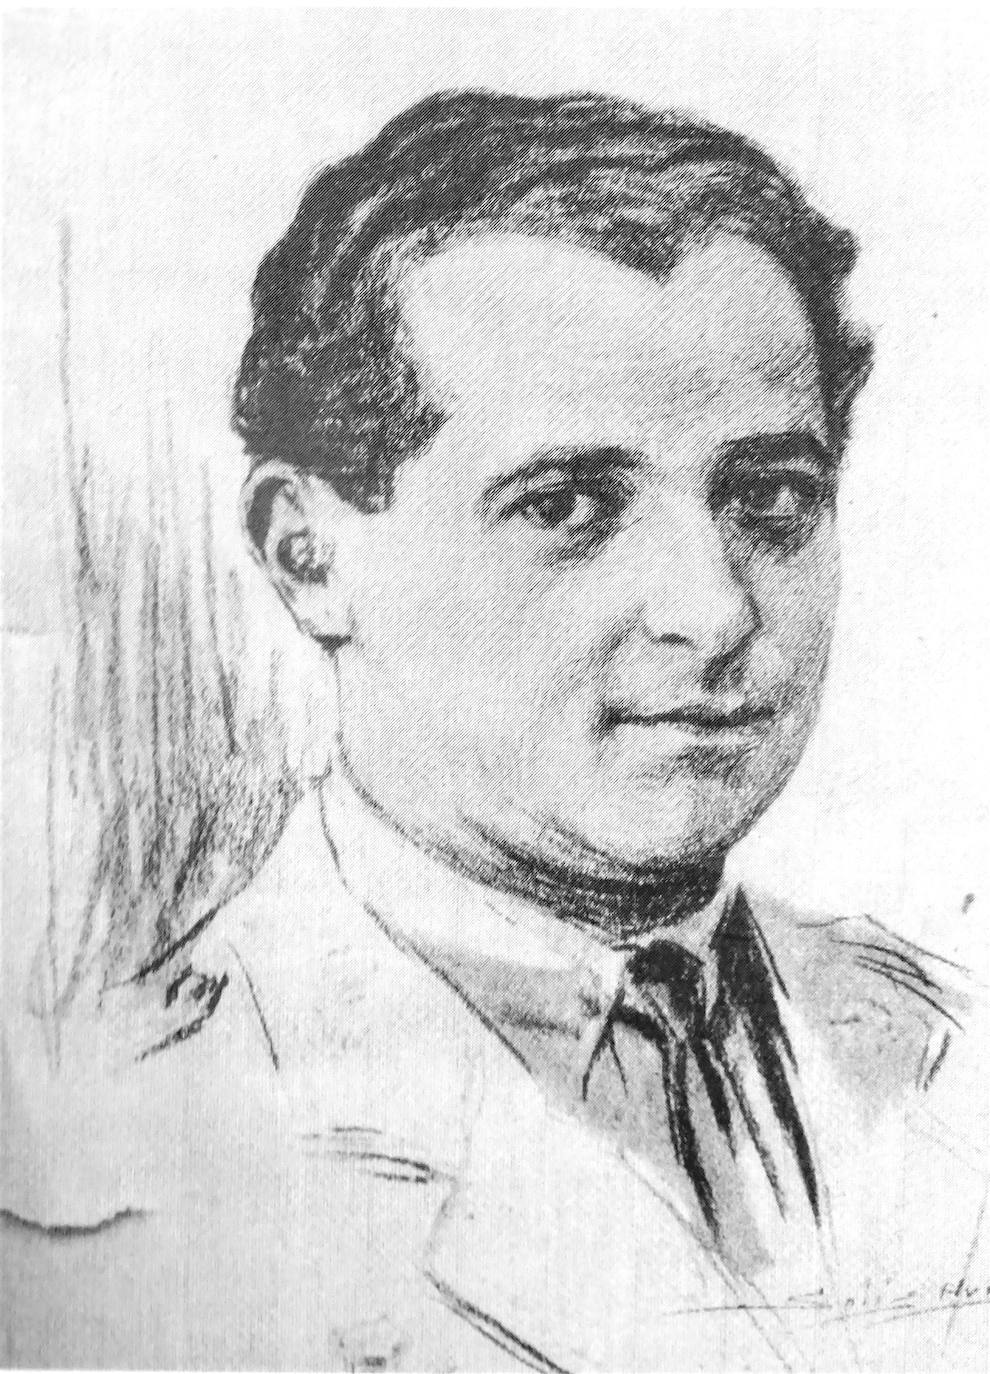 Retrato de Solís, publicado en ABC, de Ramón Franco, el héroe del vuelo Plus Ultra